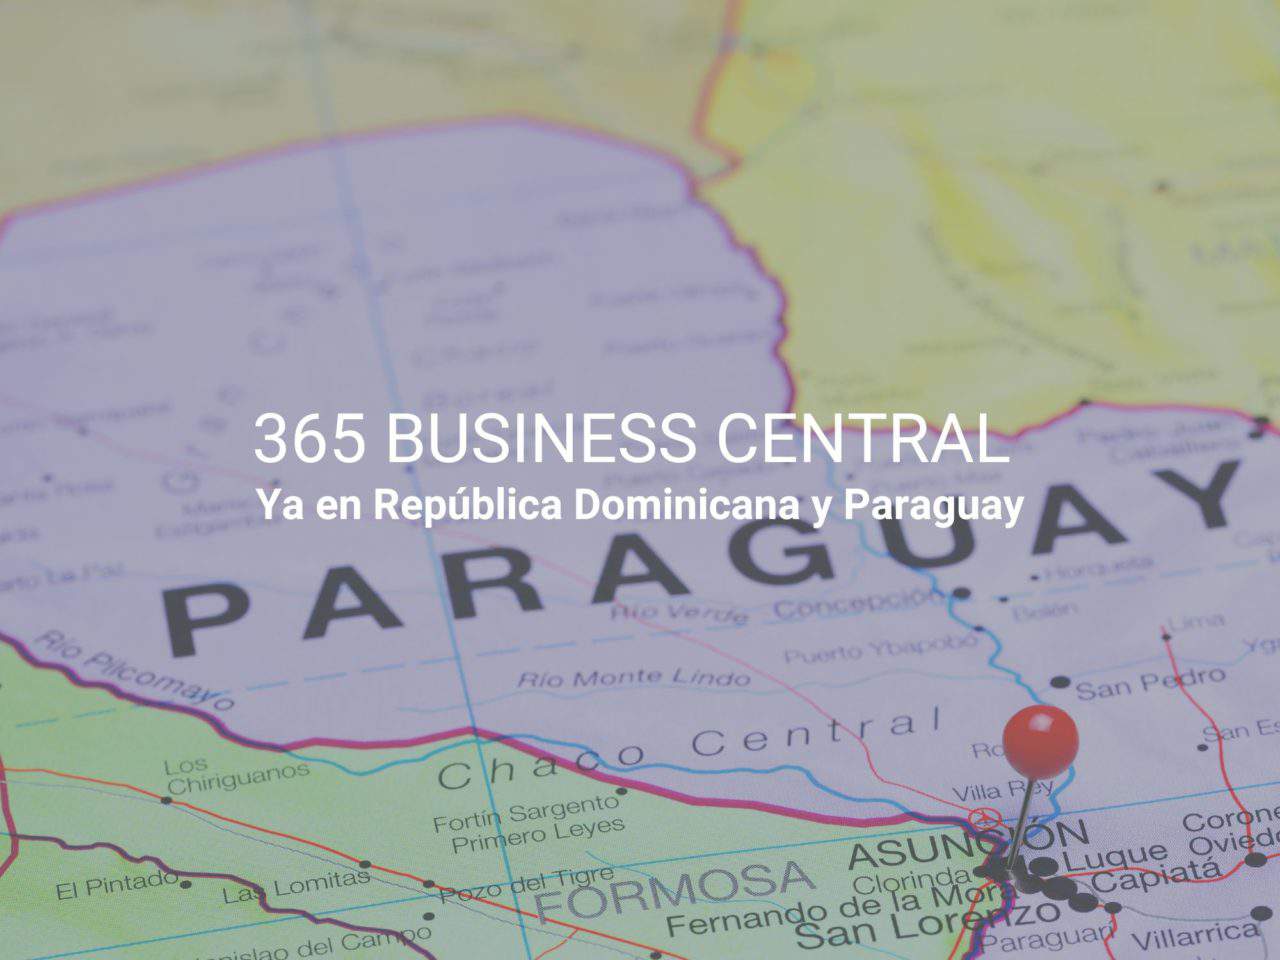 365 business central ya en República Dominicana y paraguay